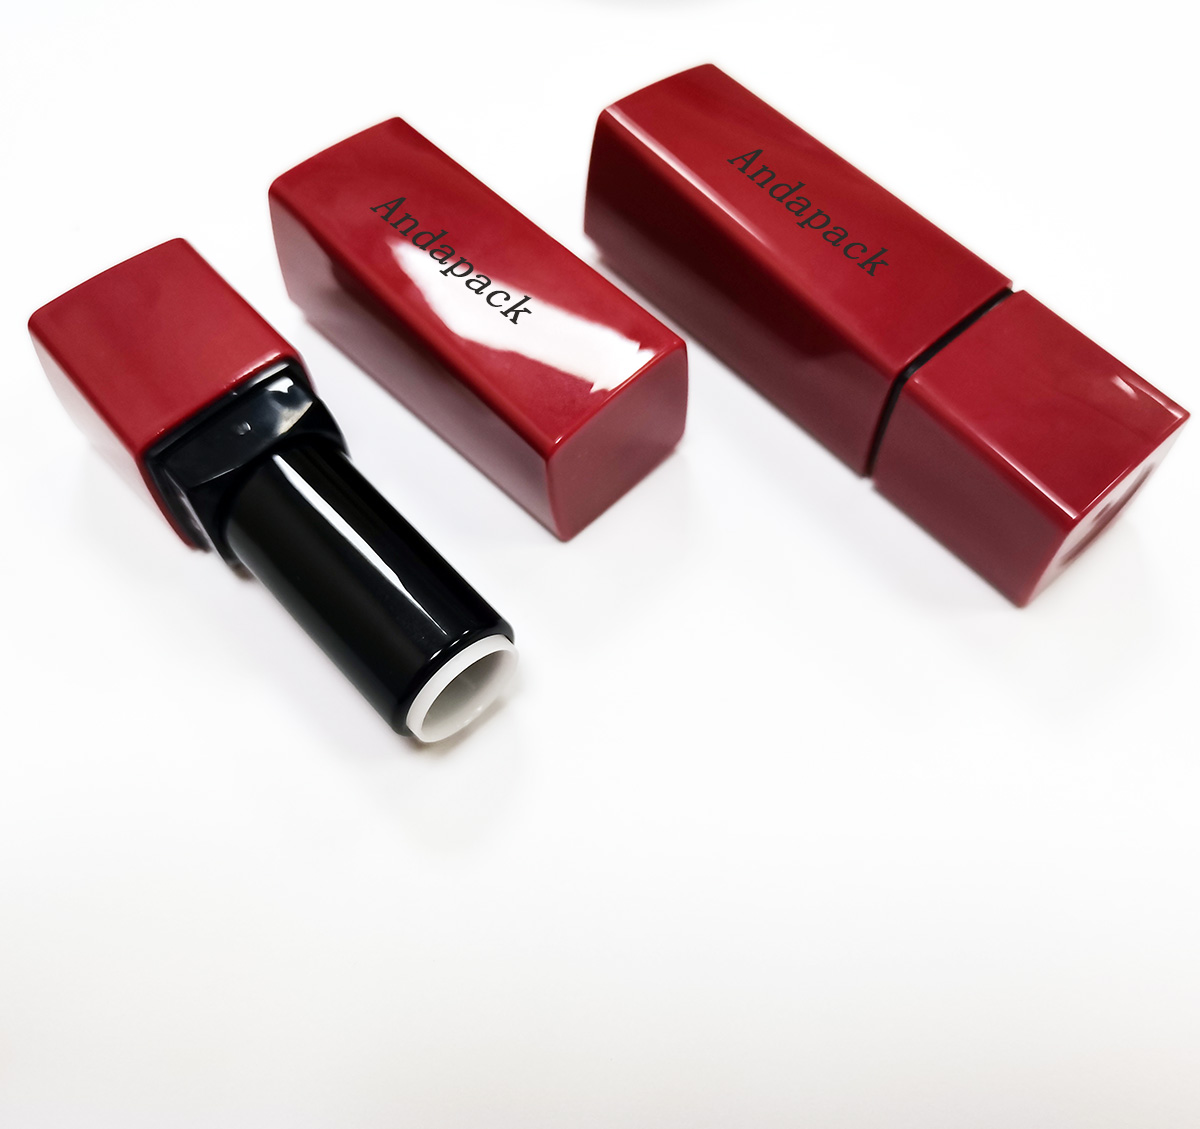 口红管 #365 lipstick tube   